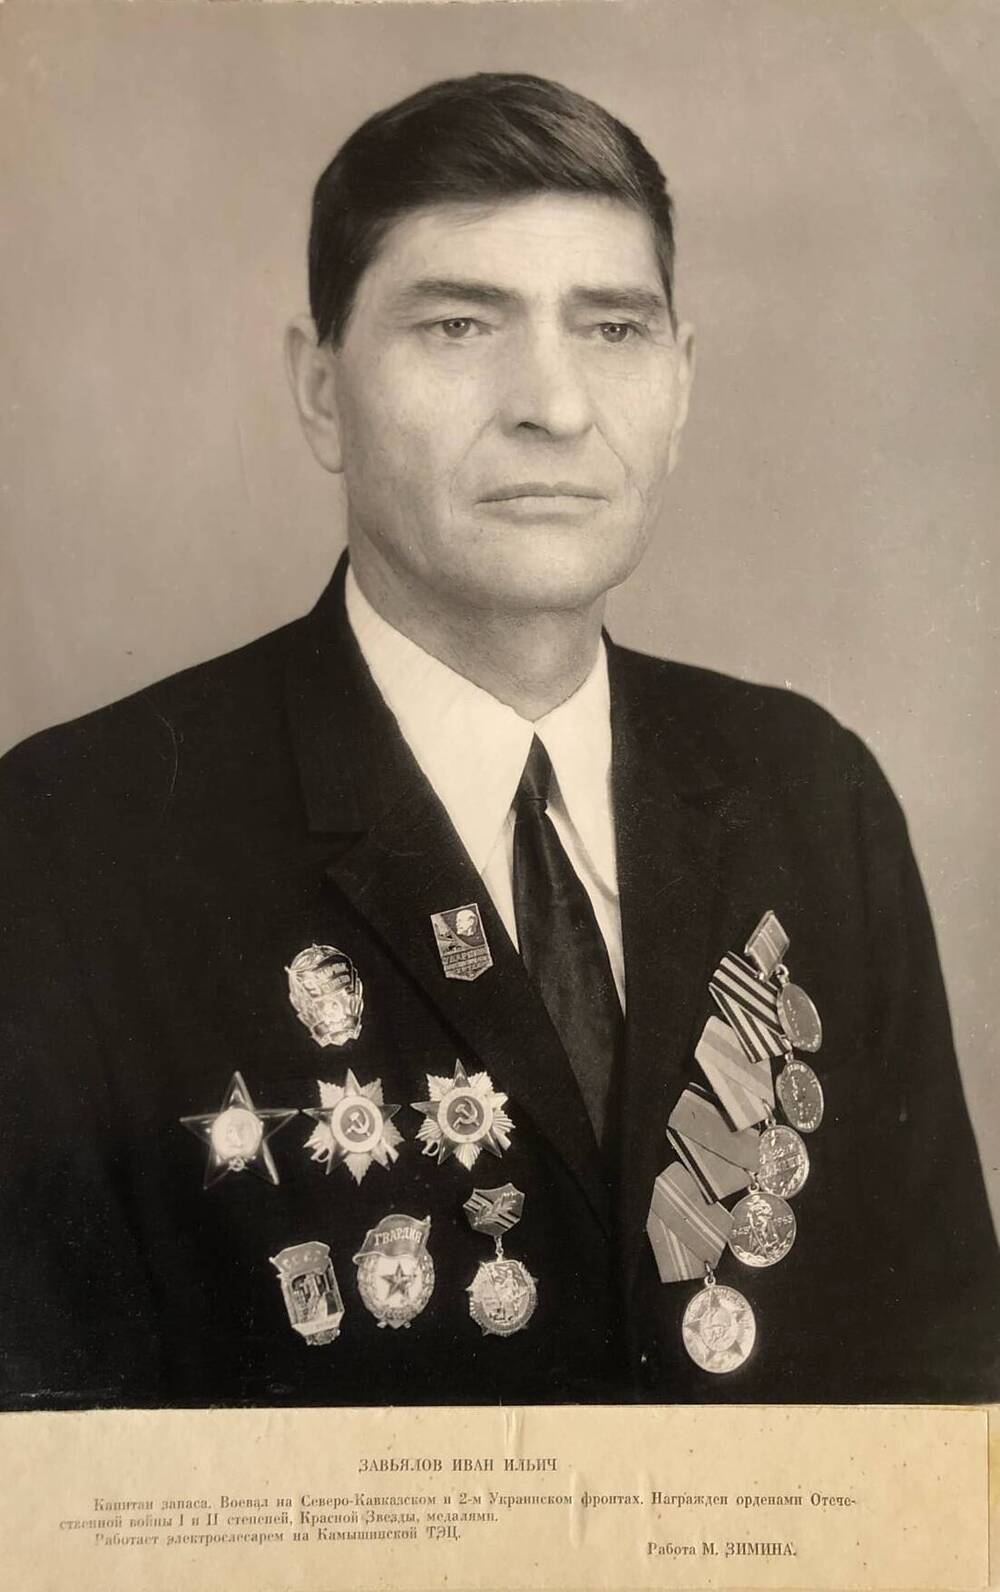 Фотография Завьялова Ивана Ильича, участника Великой Отечественной войны 1941-1945 гг.